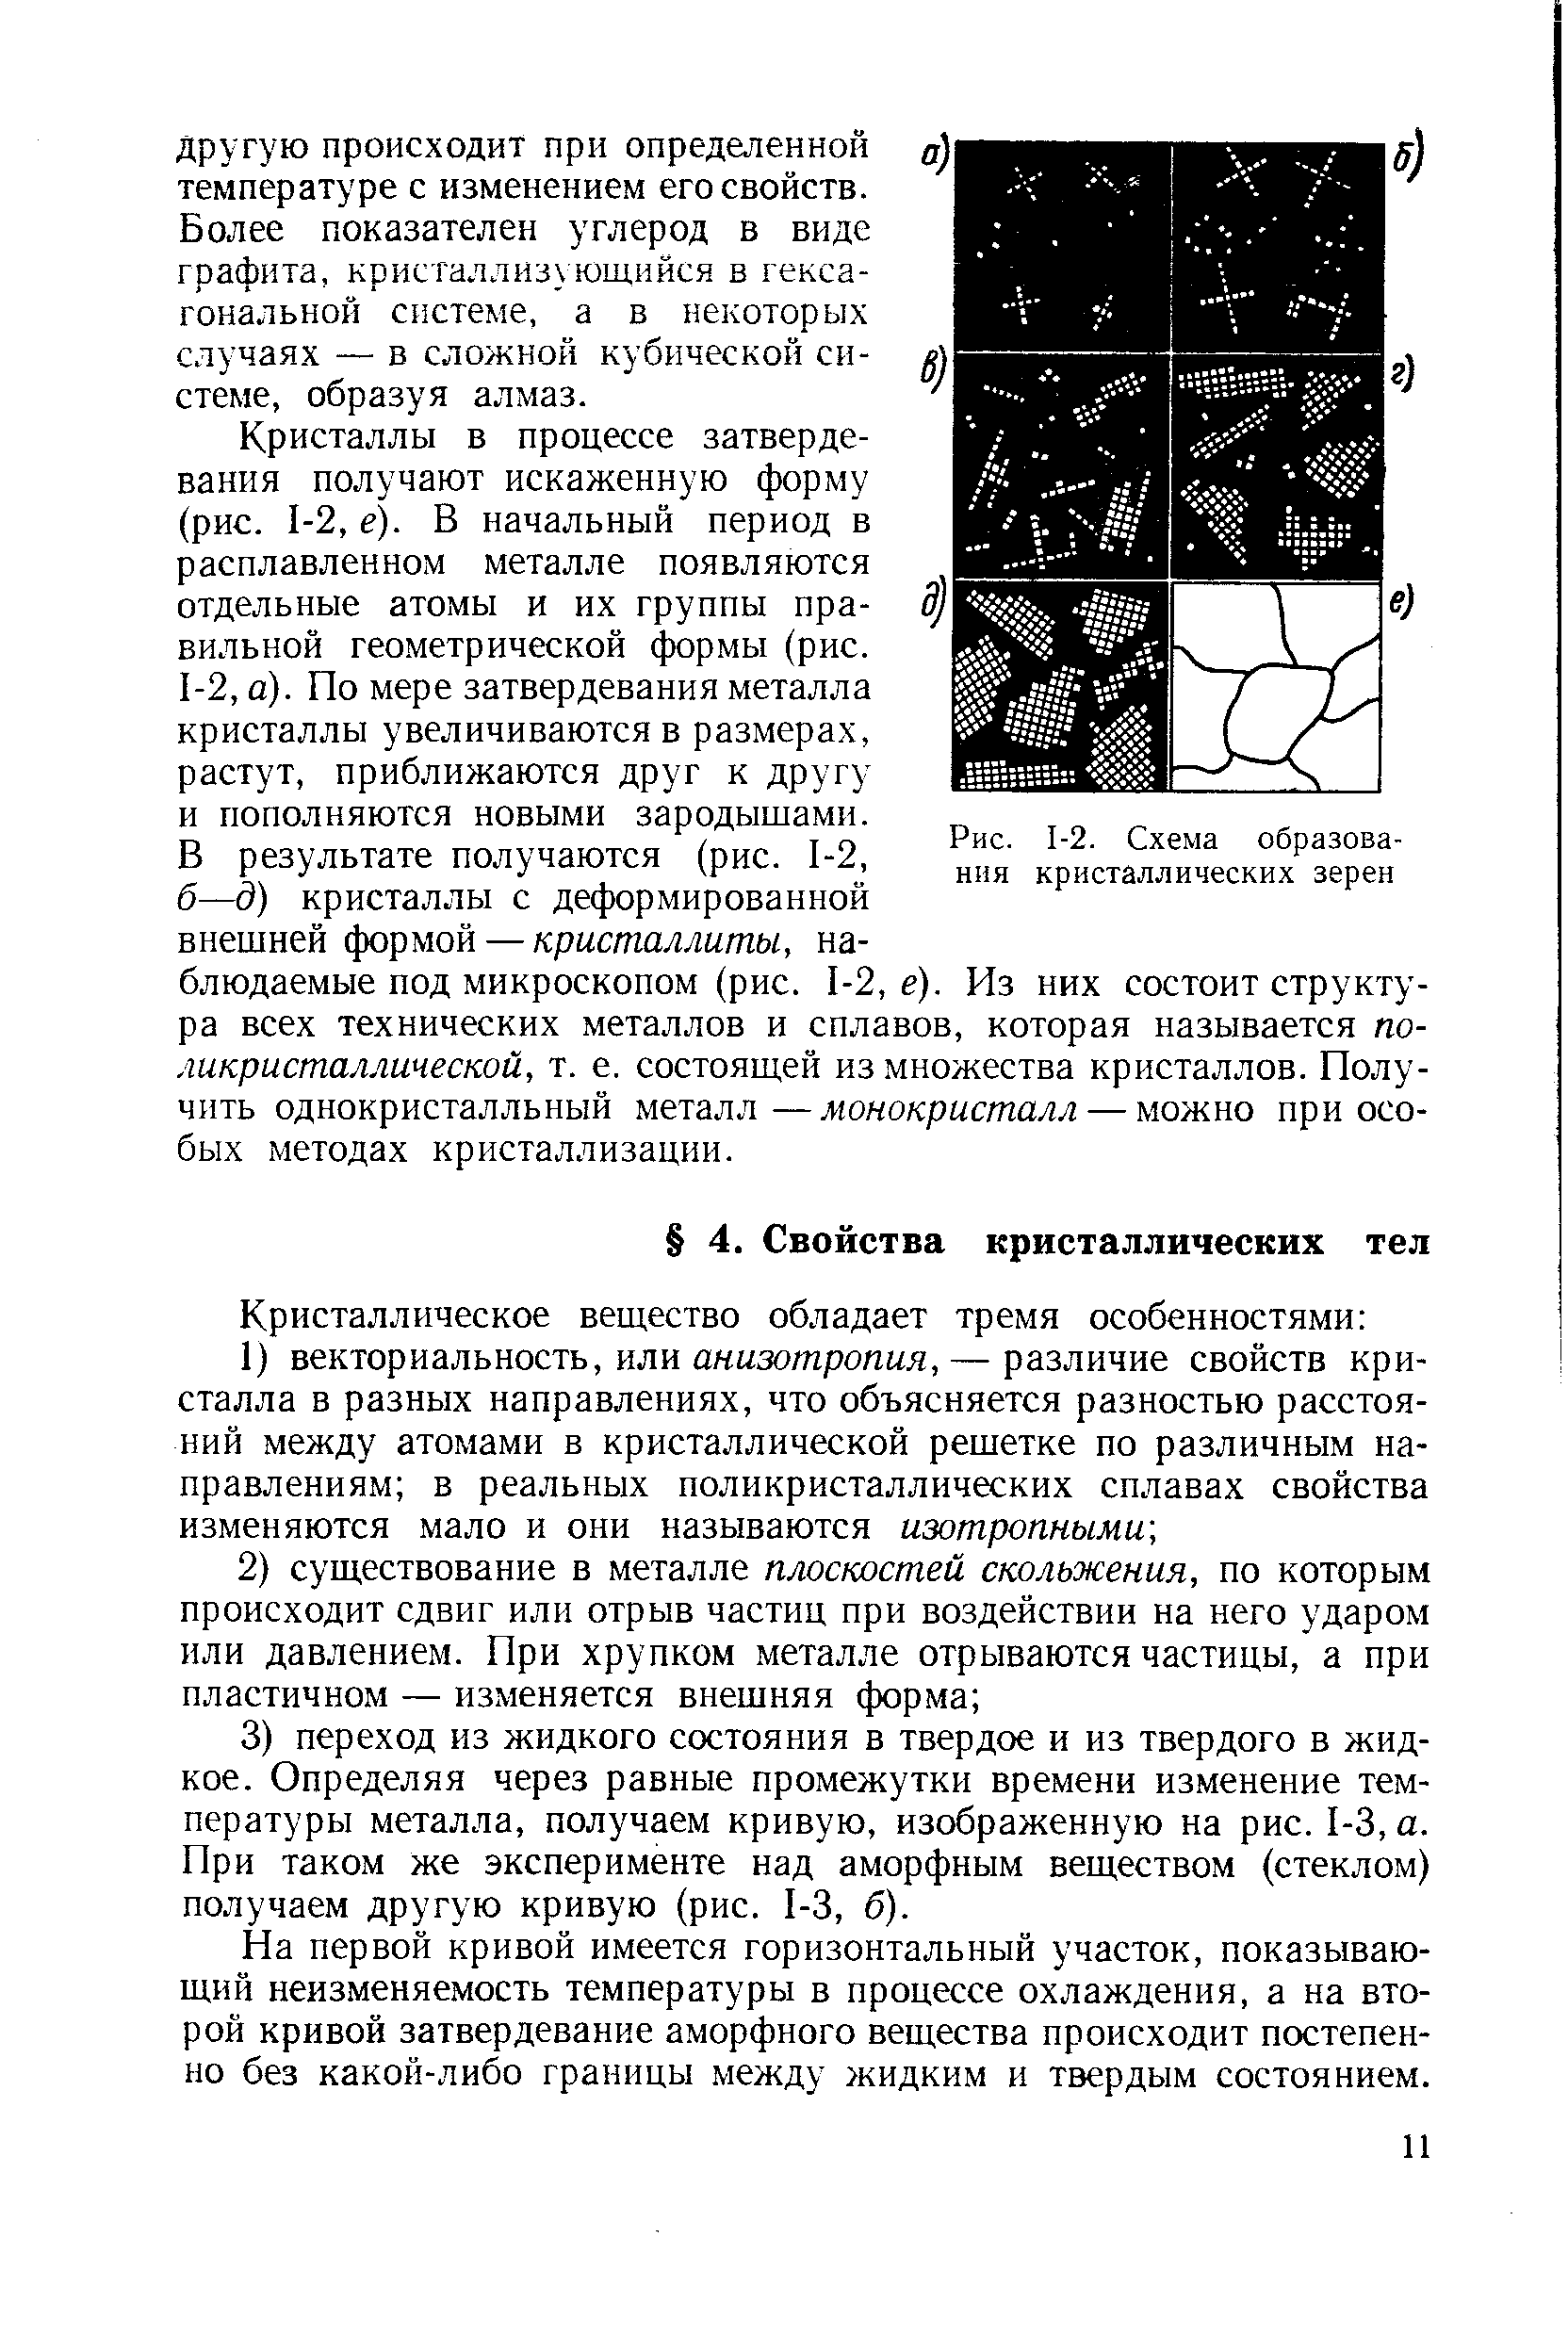 Рис. 1-2, Схема образования кристаллических зерен
